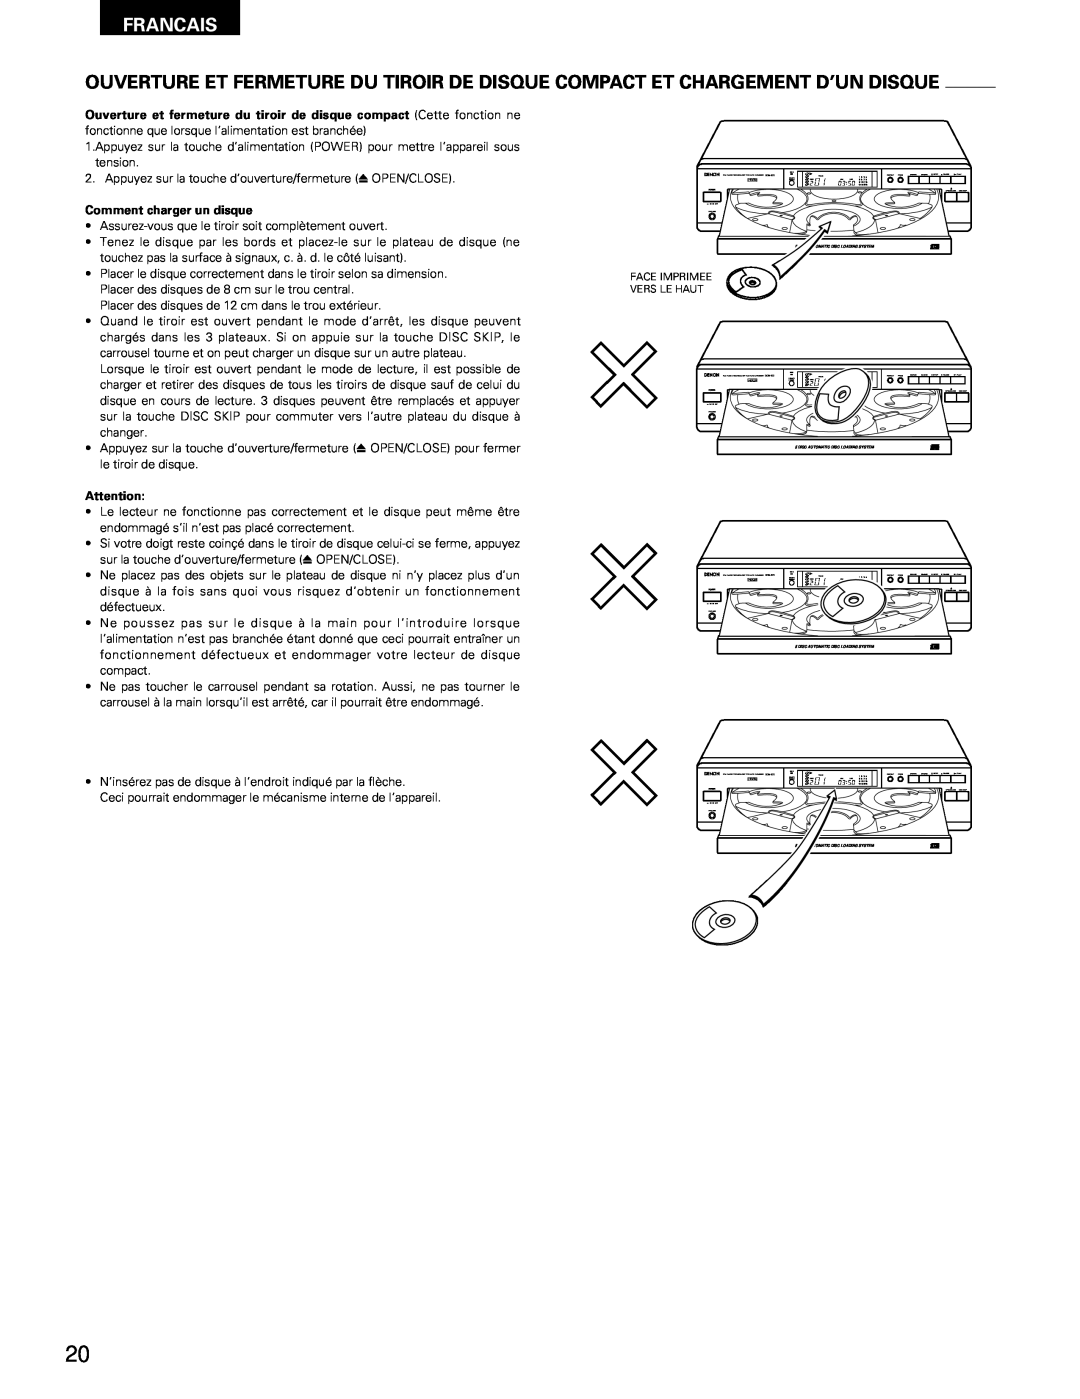 Denon DCM-370, 270 operating instructions Francais, Comment charger un disque 